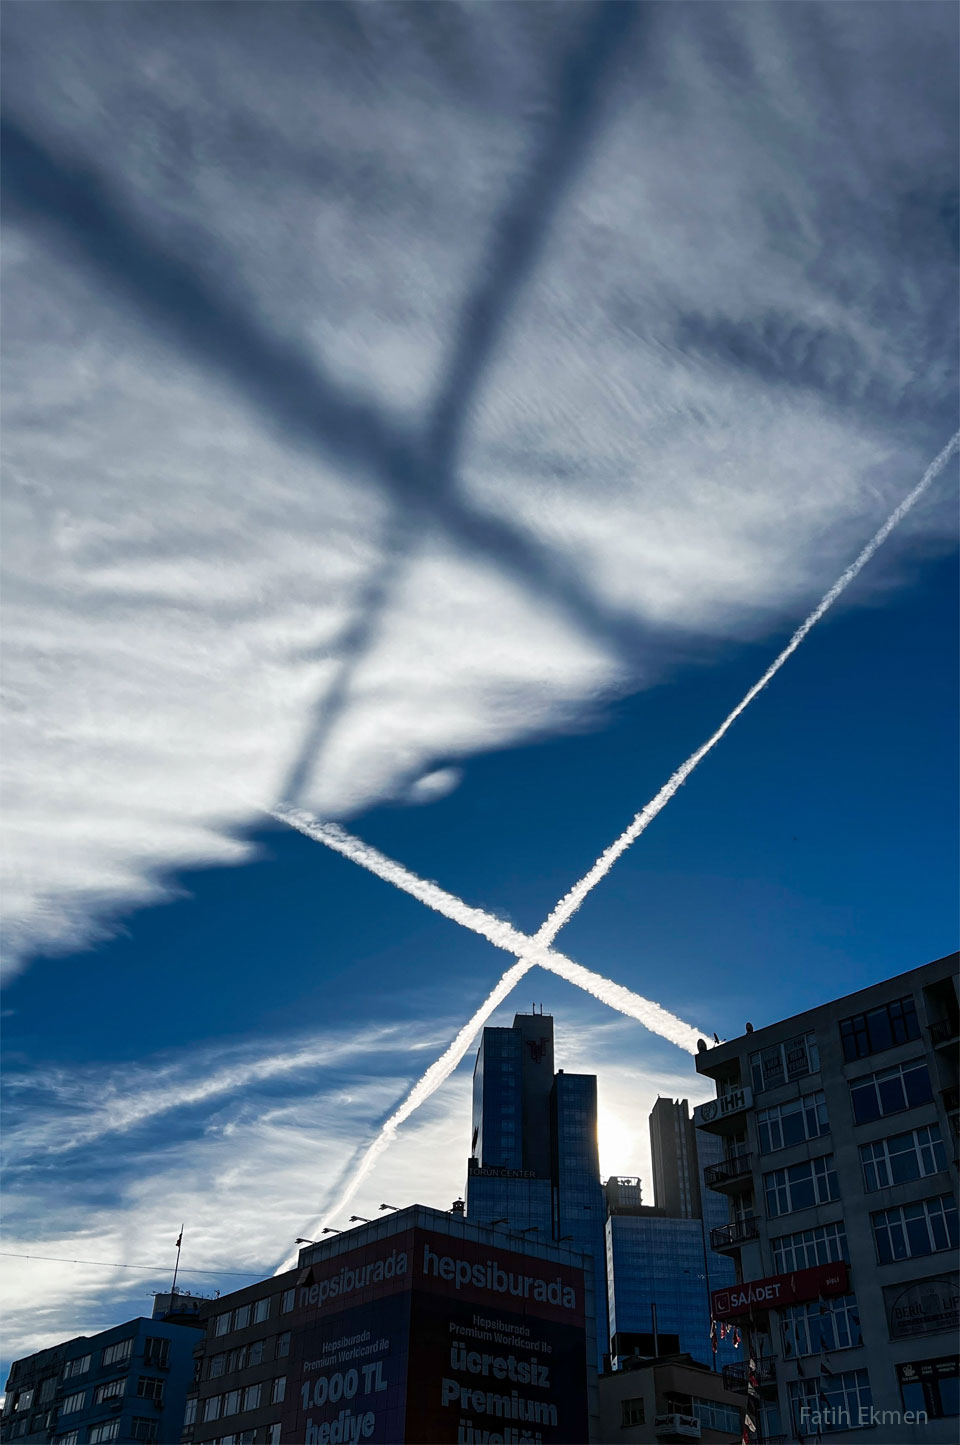 Am Himmel leuchtet ein riesiges X aus Kondensstreifen. Diese werfen einen X-förmigen Schatten auf die Wolken darüber.